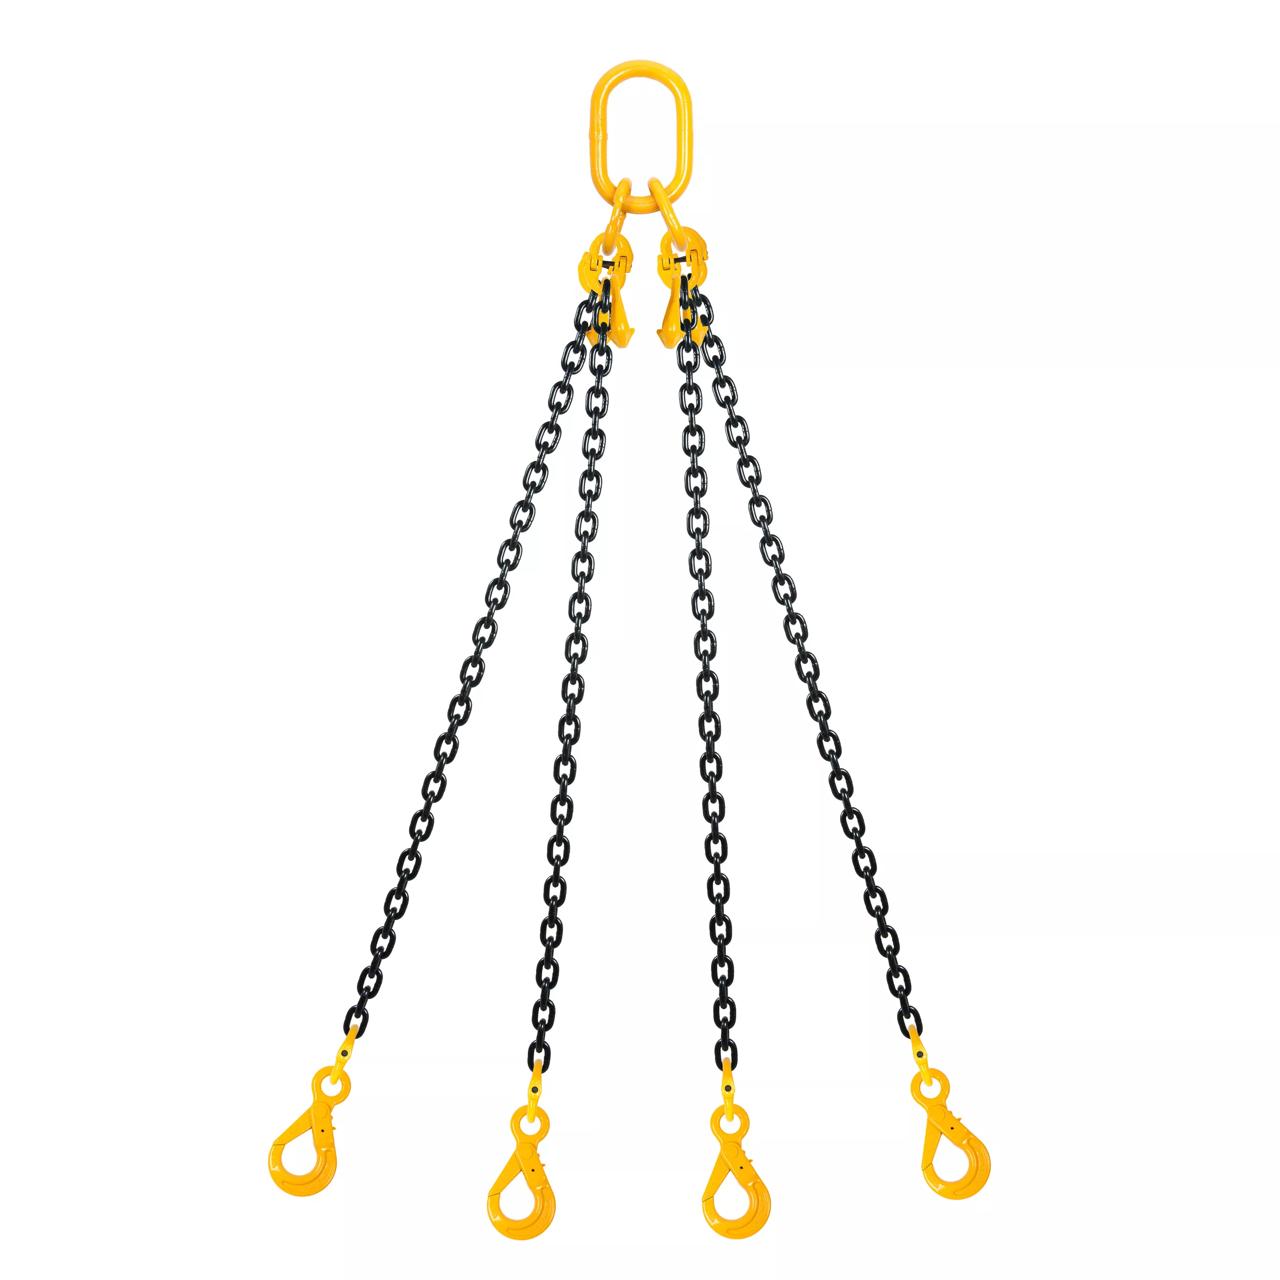 Chain sling 4-part Grade 80, 10mm, length 3m, self locking hooks, shortening hooks